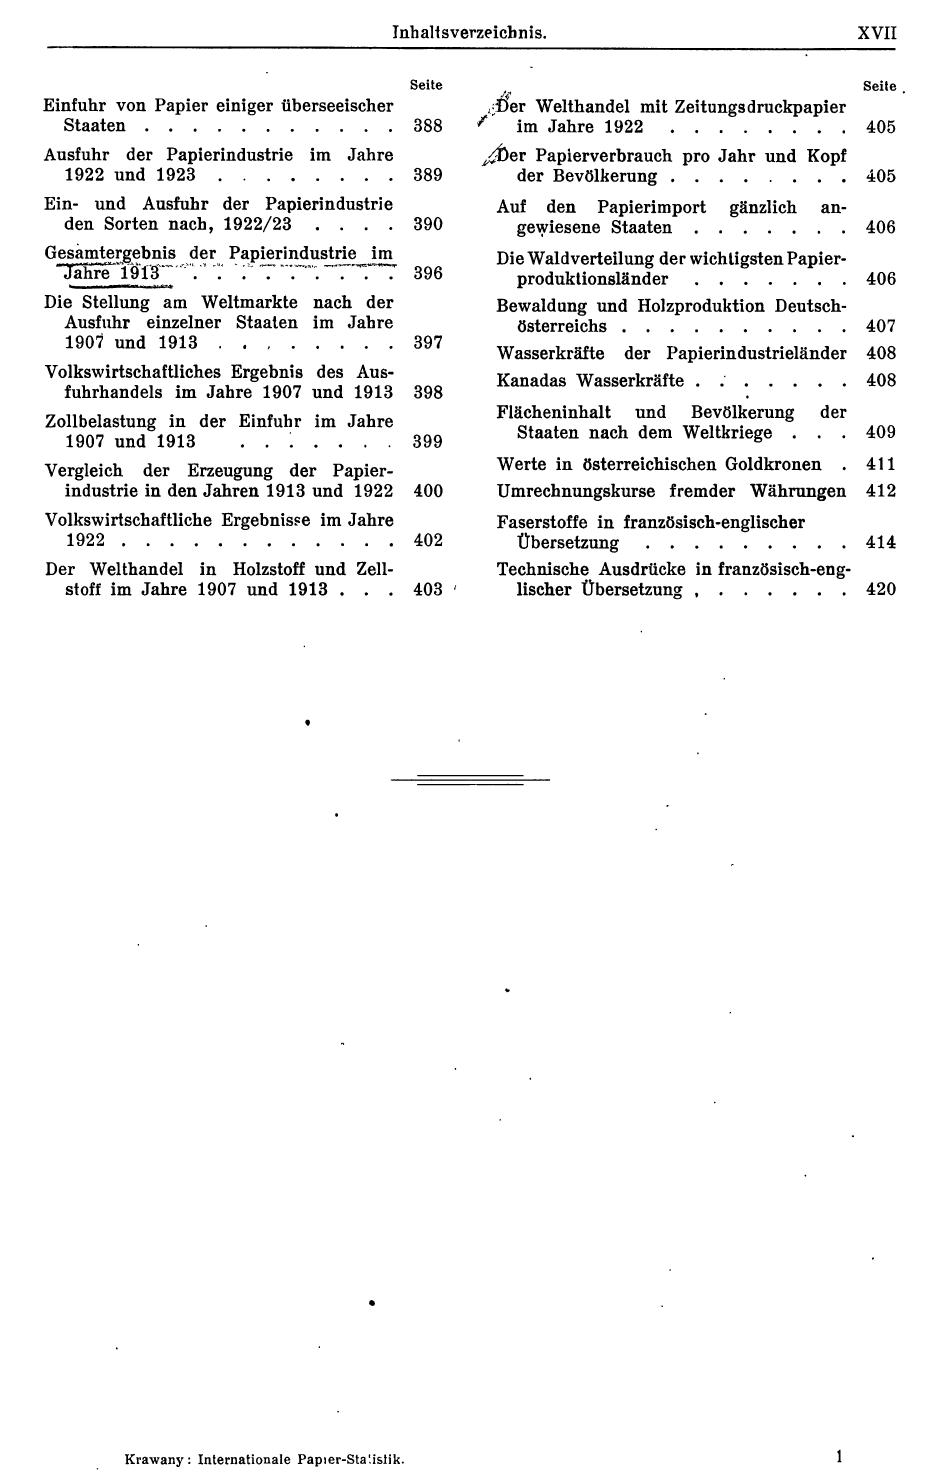 Internationale Papierstatistik 1925 - Seite 23